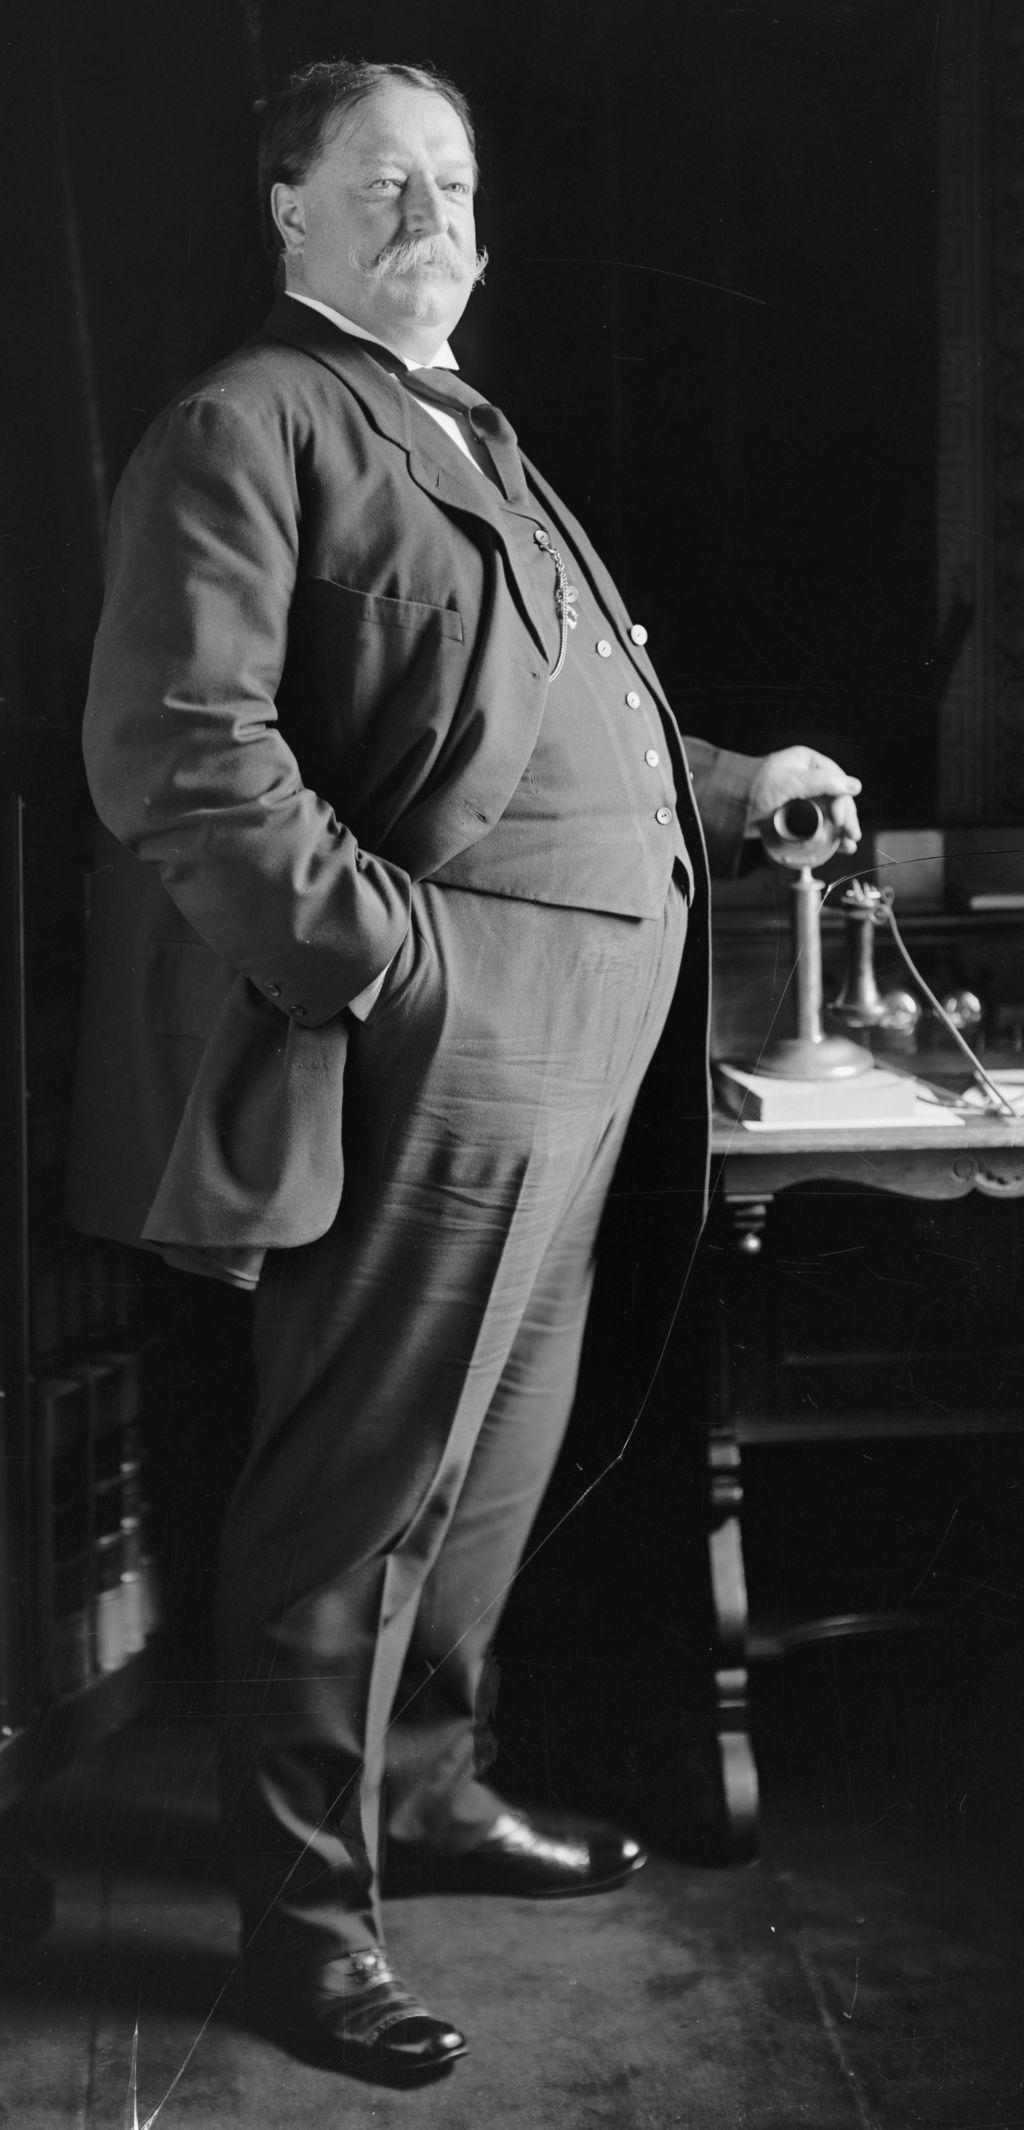 William Howard Taft in the White House